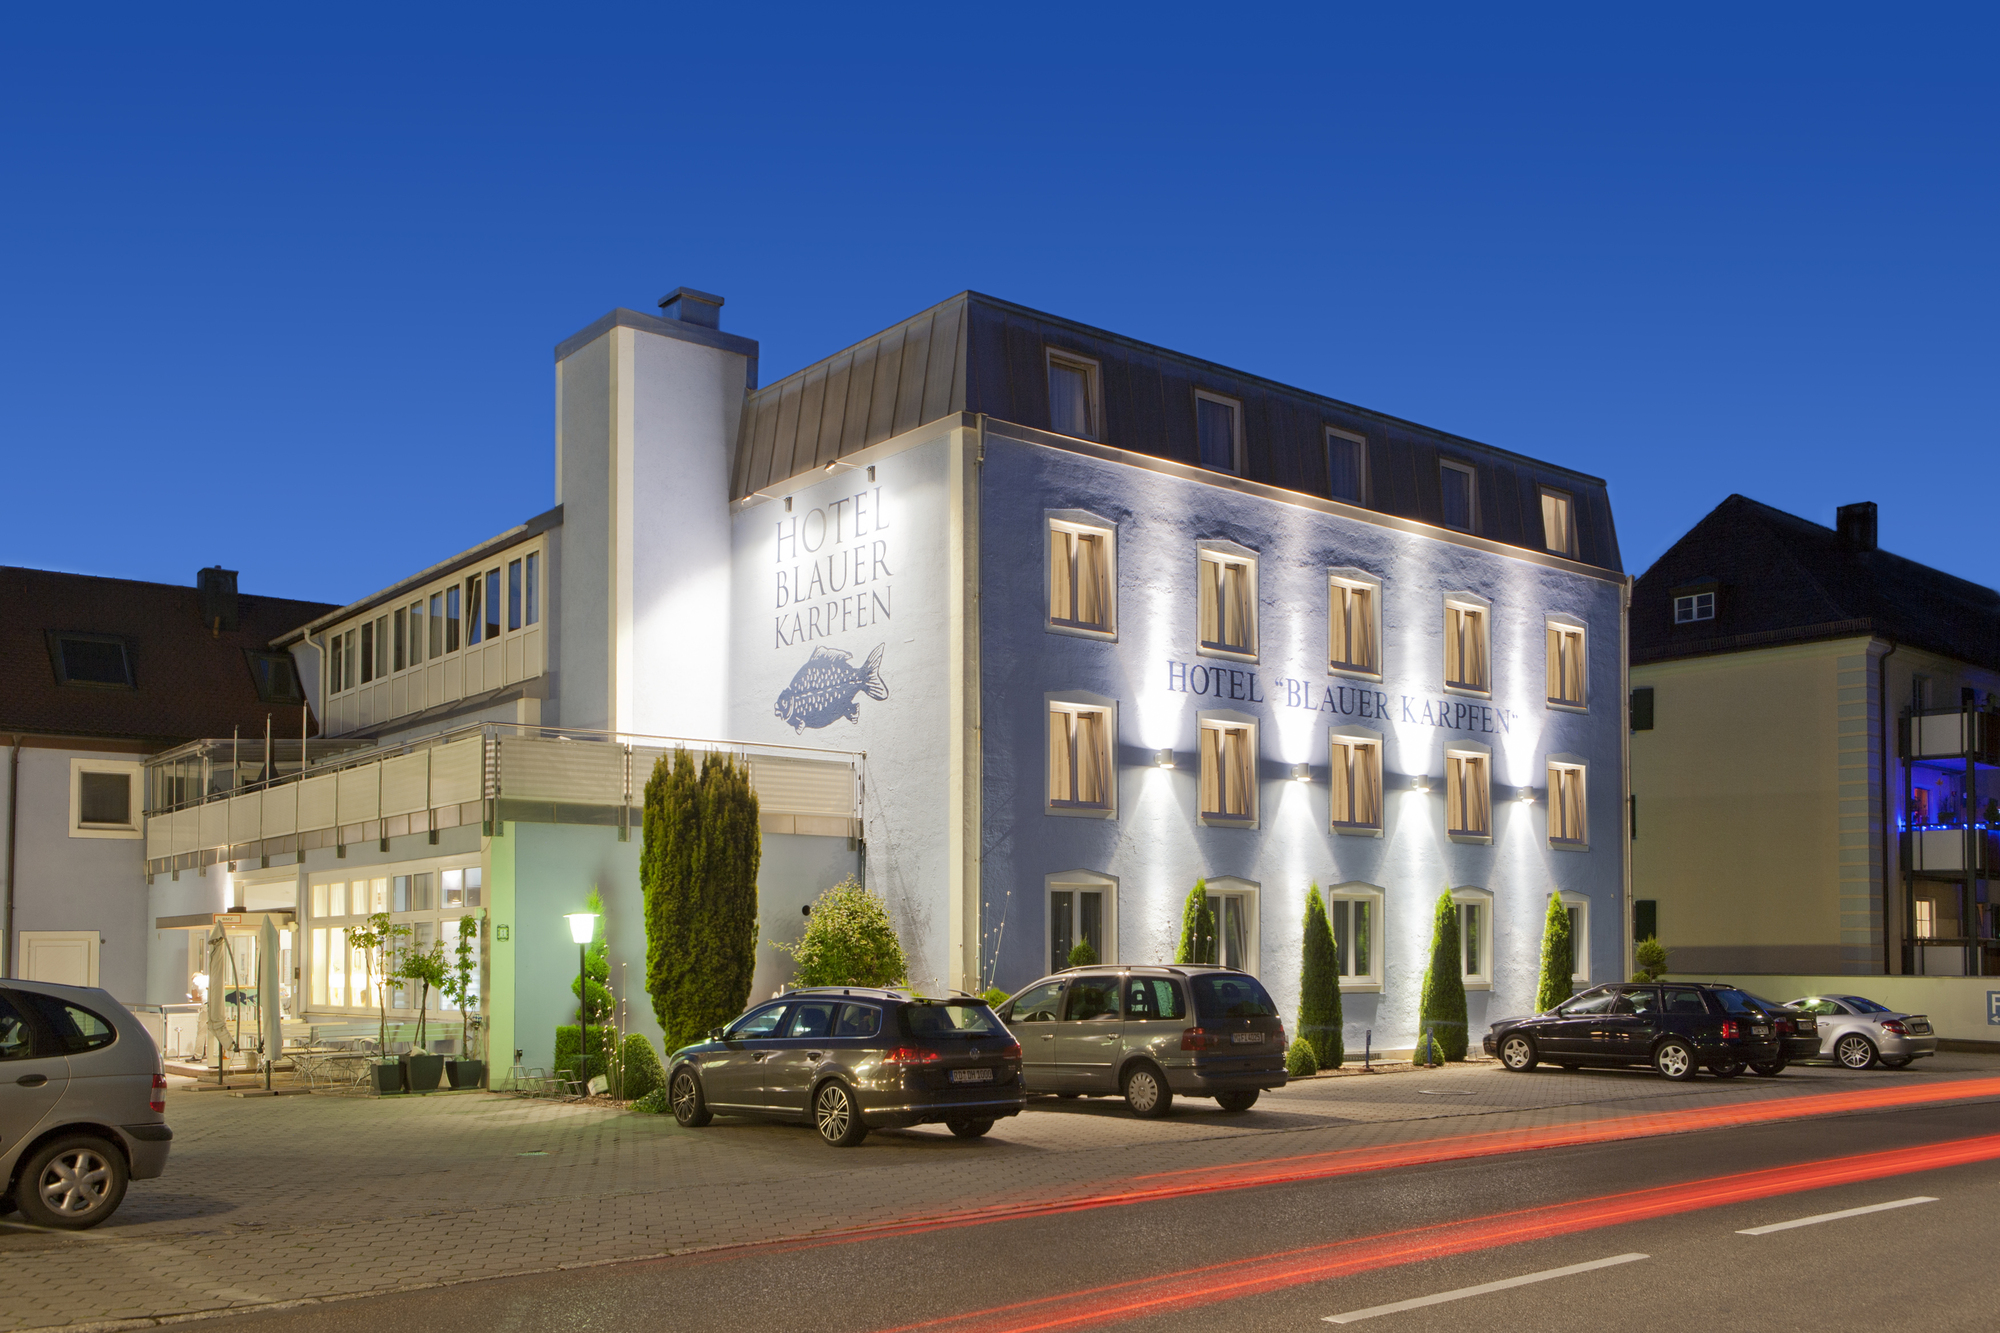 Das Apache 207 Konzert Hotel blauer Karpfen, Oberschleißheim bei München